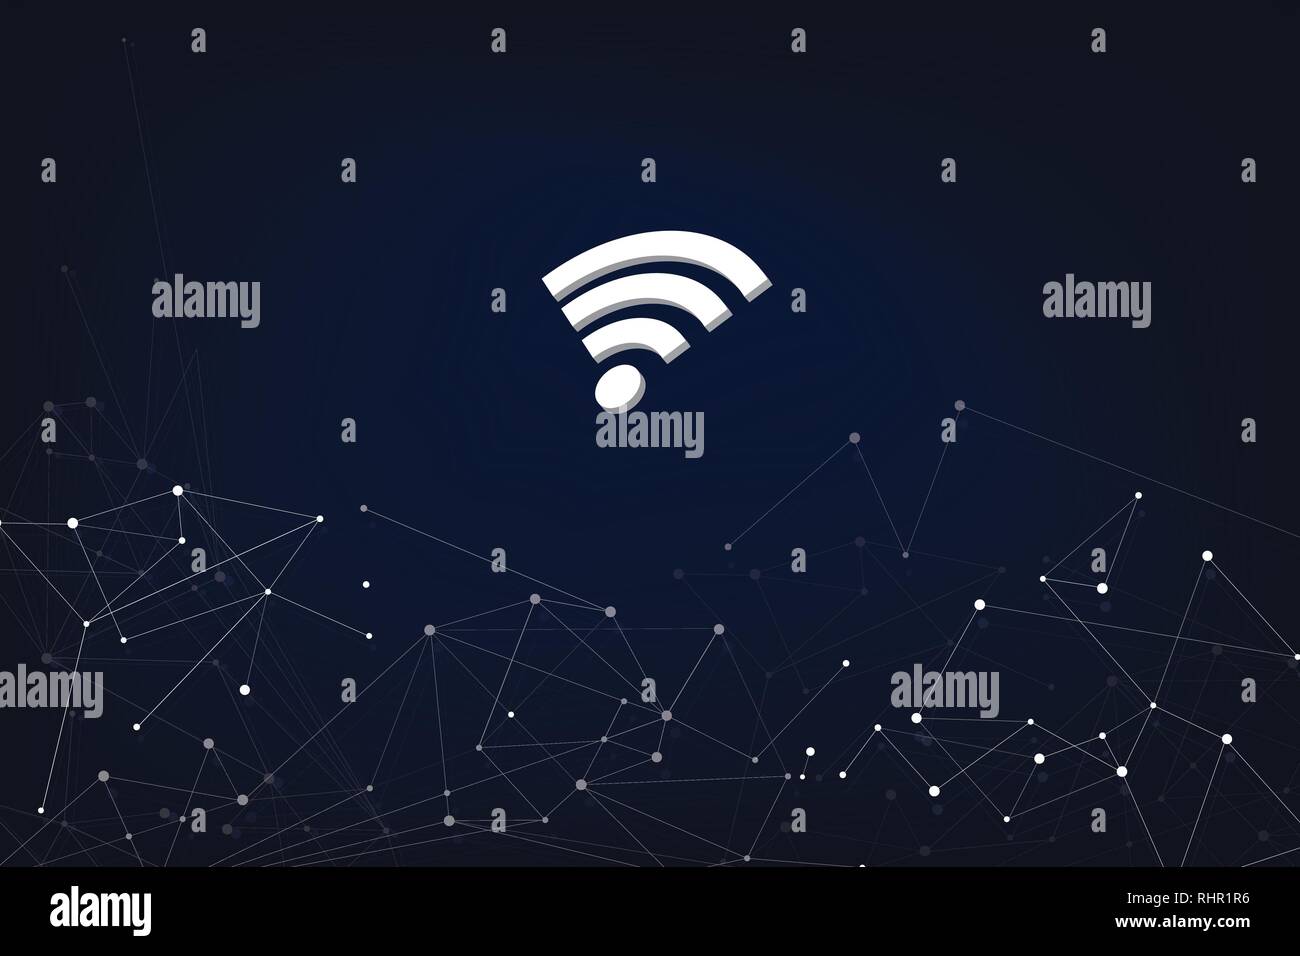 Abstract Digital un concetto di rete con la rete WLAN di Symbol con Abstract sfondo scuro Illustrazione Vettoriale